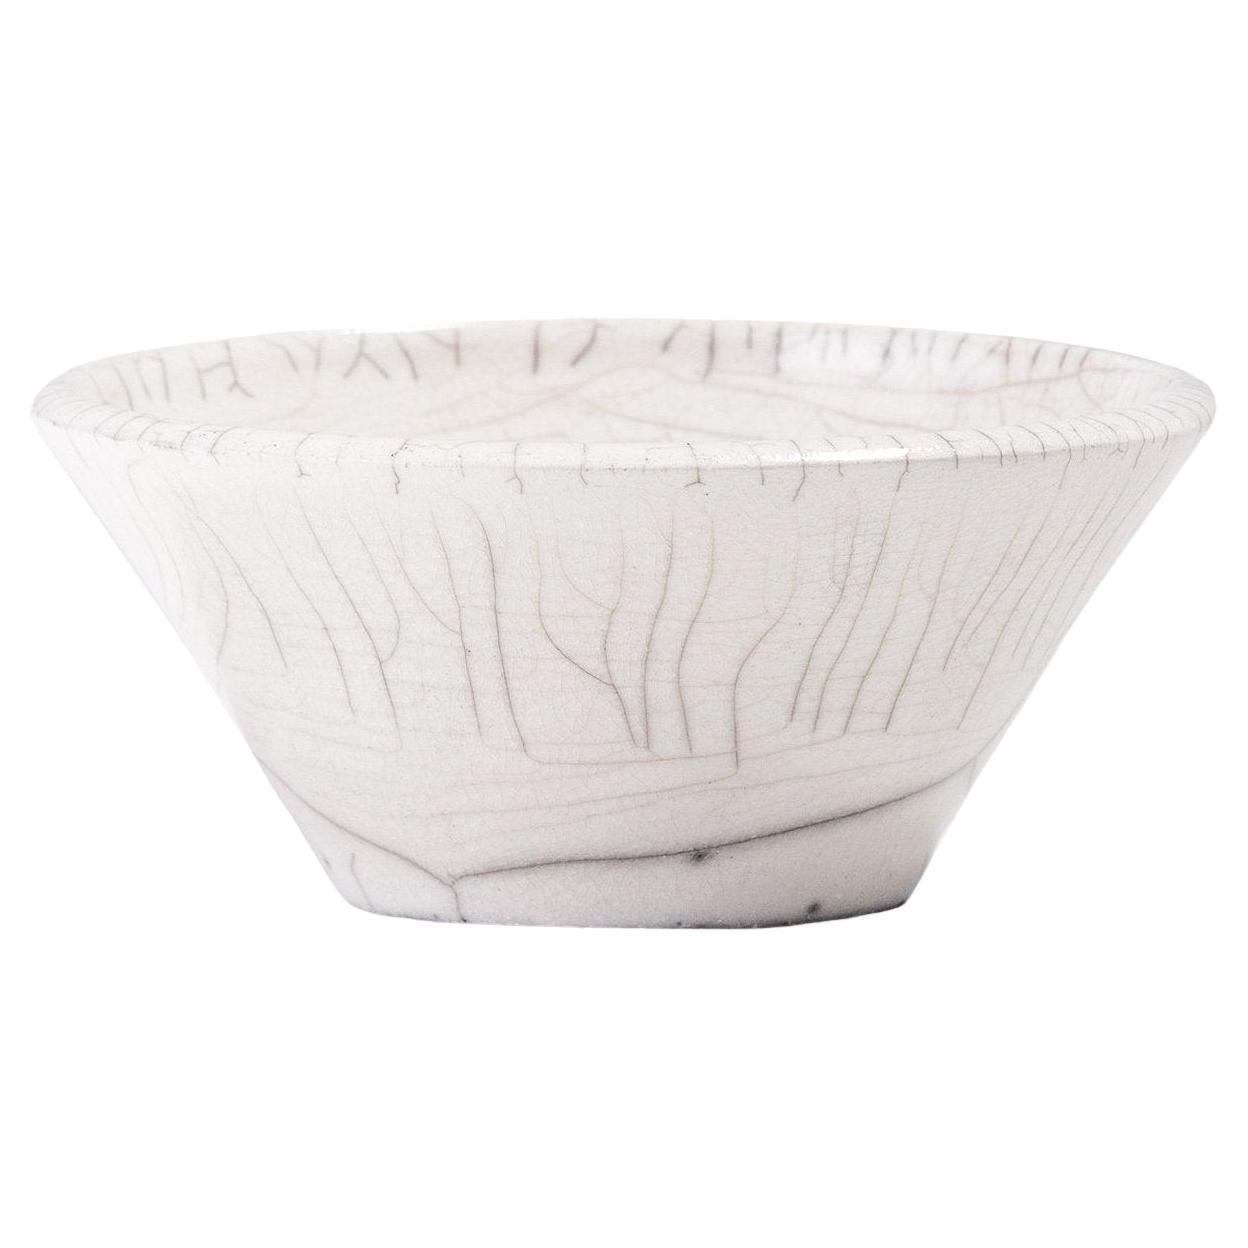 Japanese LAAB Moon Bowl Raku Ceramic Crackle White